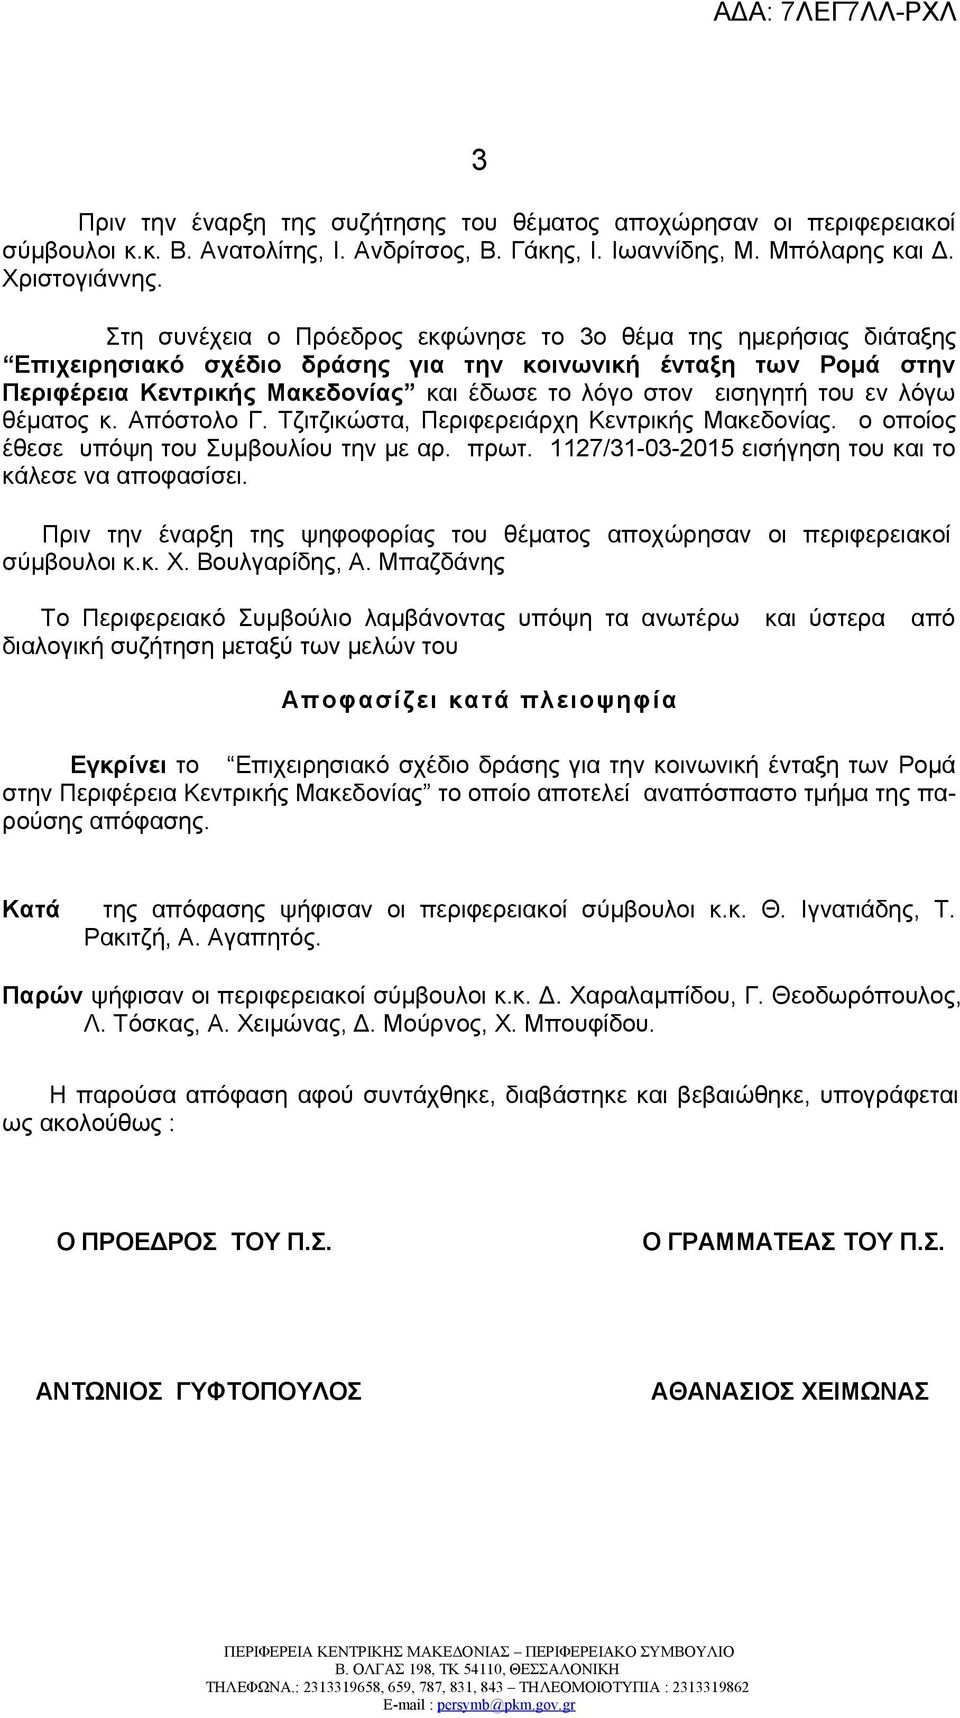 του εν λόγω θέματος κ. Απόστολο Γ. Τζιτζικώστα, Περιφερειάρχη Κεντρικής Μακεδονίας. ο οποίος έθεσε υπόψη του Συμβουλίου την με αρ. πρωτ. 1127/31-03-2015 εισήγηση του και το κάλεσε να αποφασίσει.